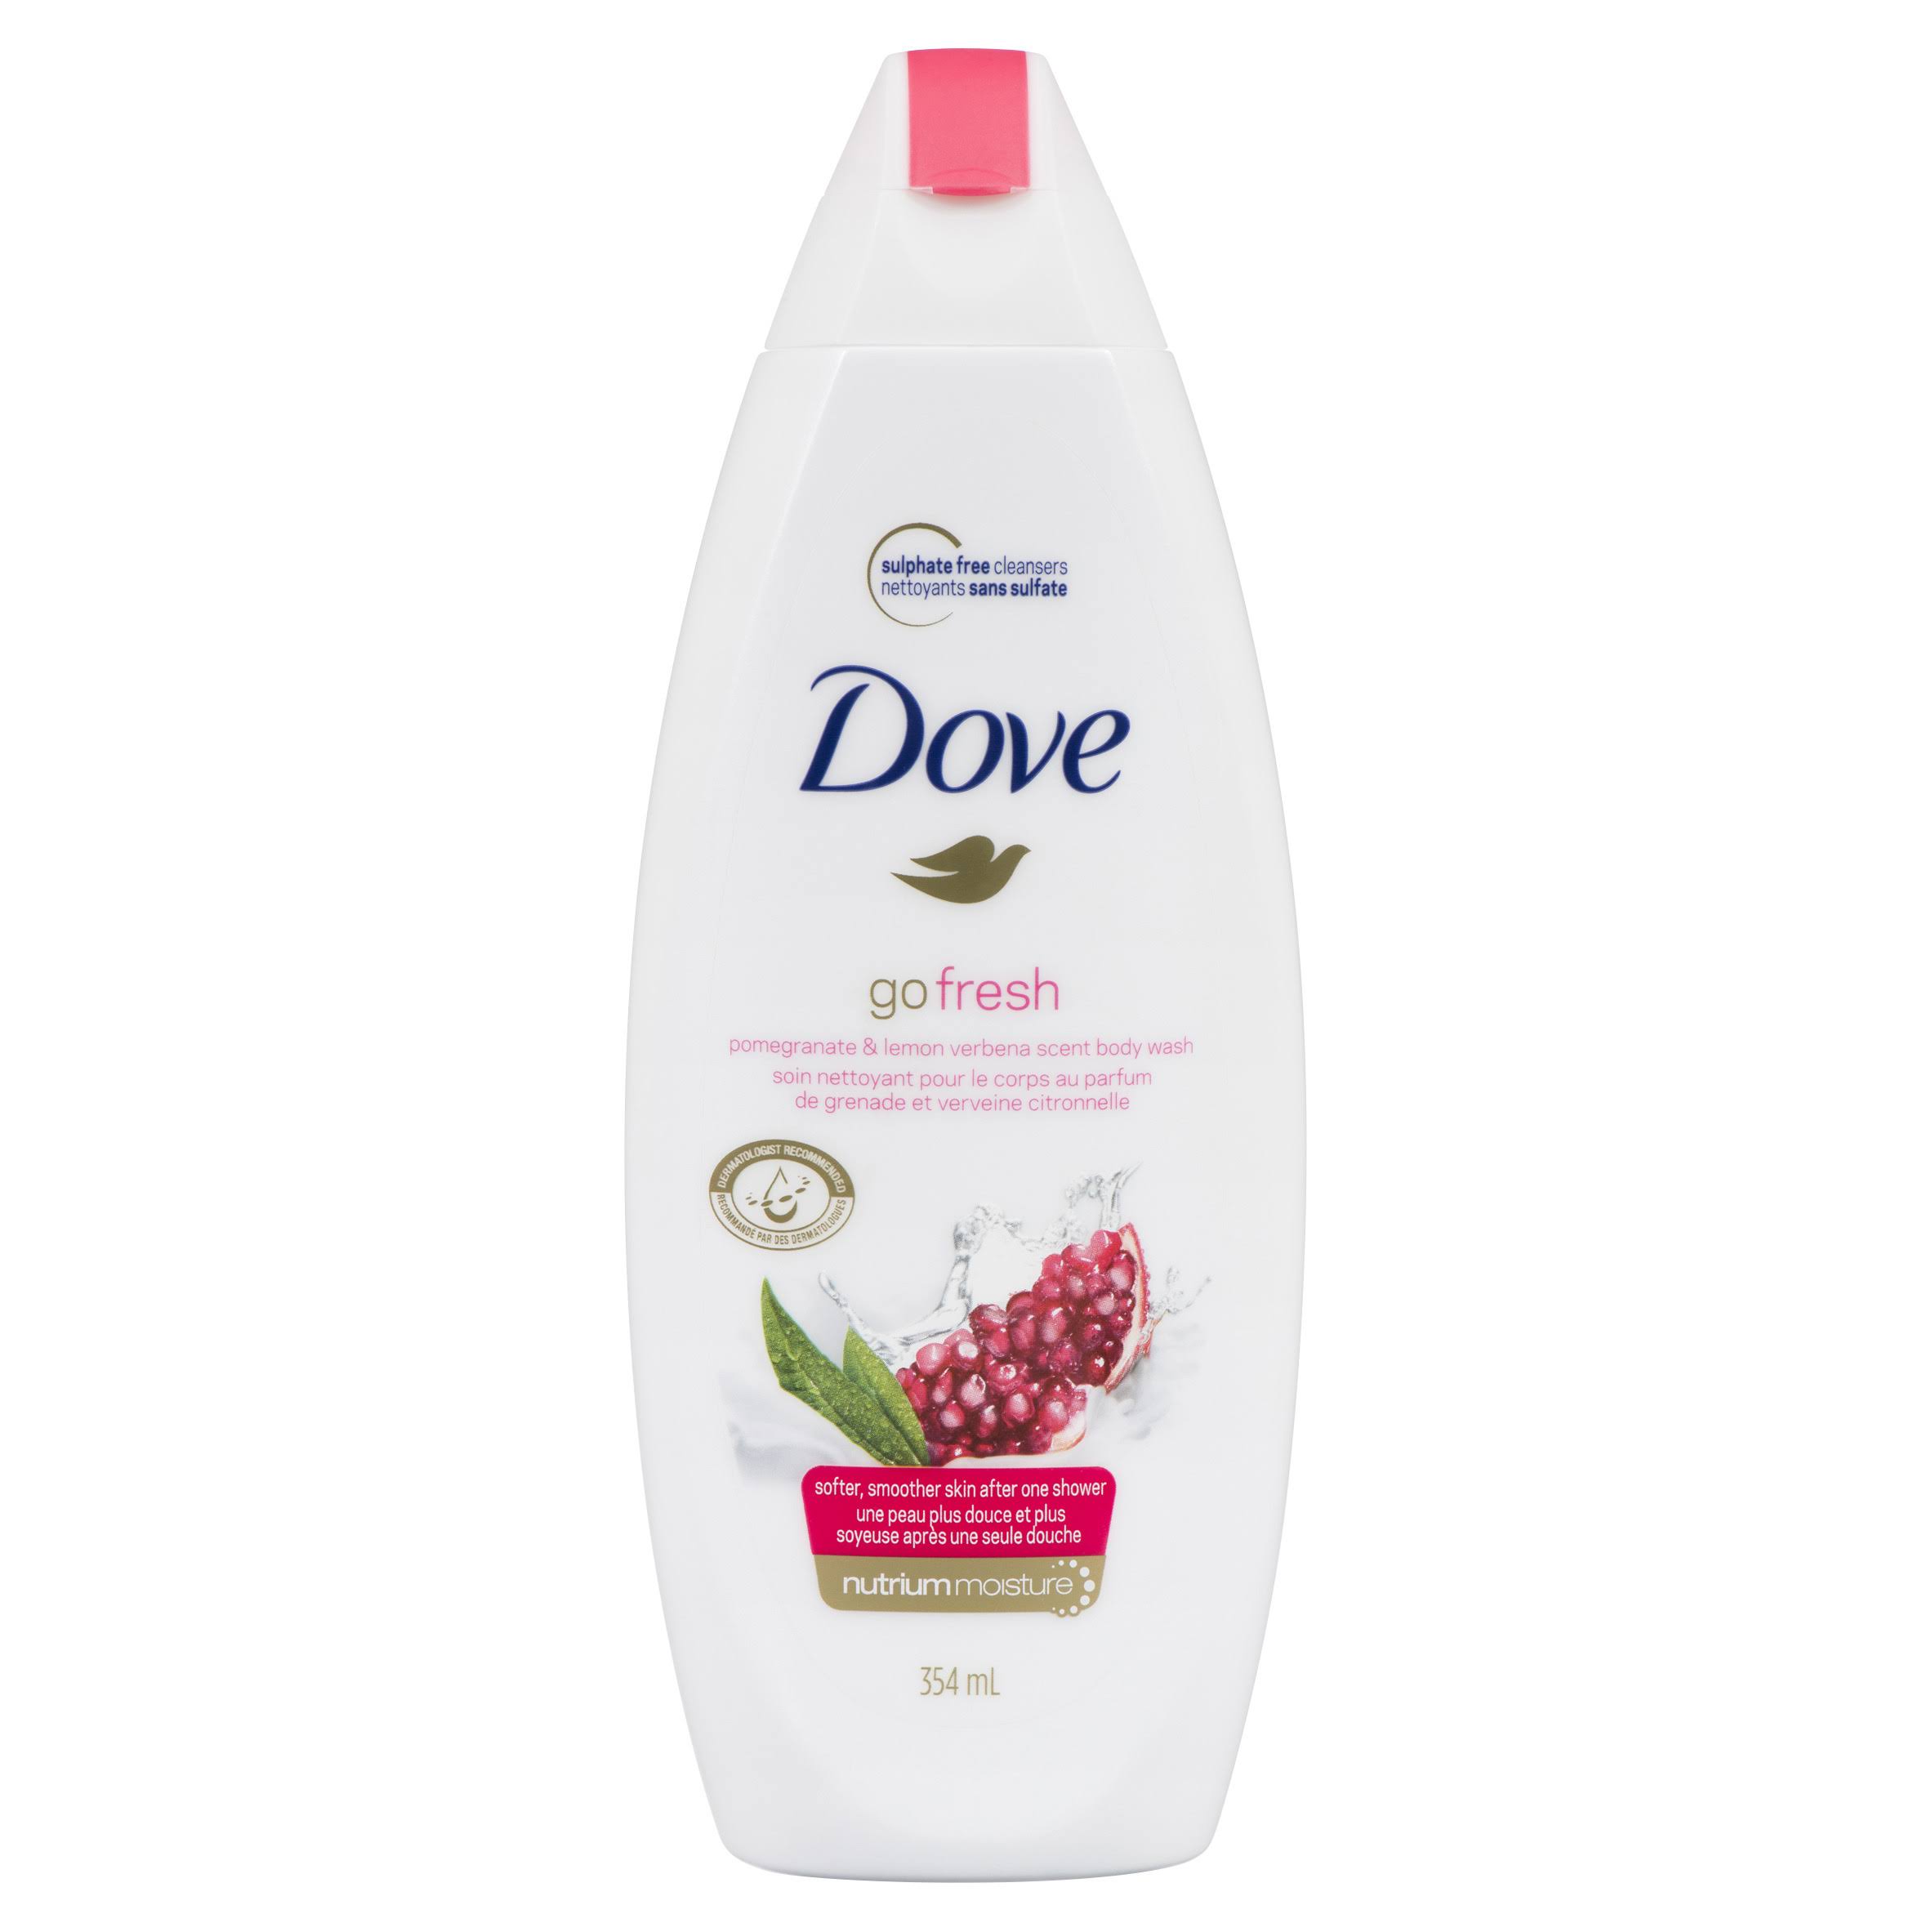 Dove Go Fresh Revive Body Wash - Pomegranate and Lemon Verbana Scent, 354ml